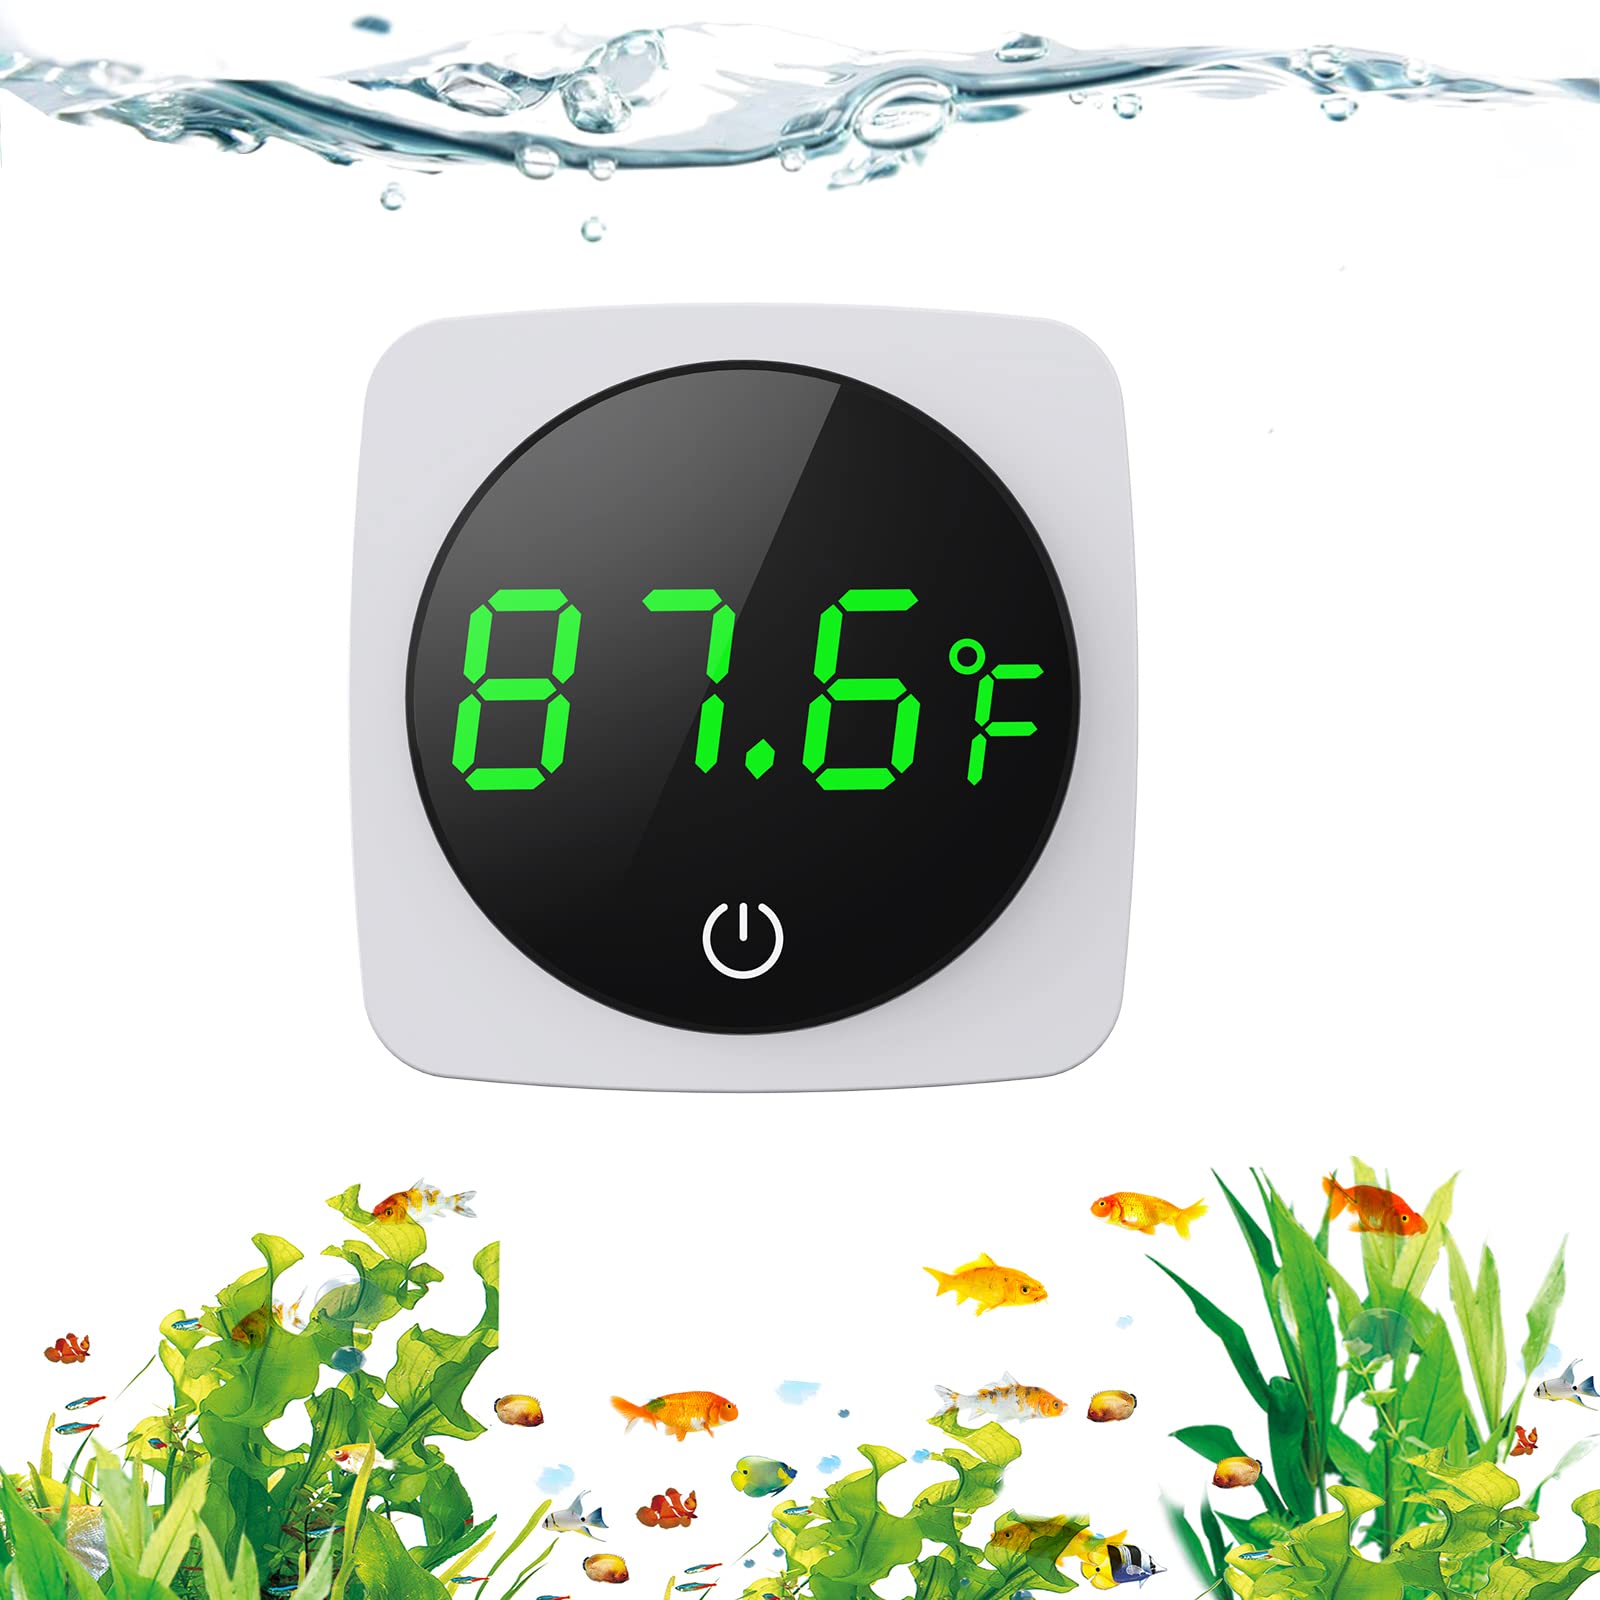 Station Météo Sans Fil avec Ecran Tactile Digitale Thermomètre